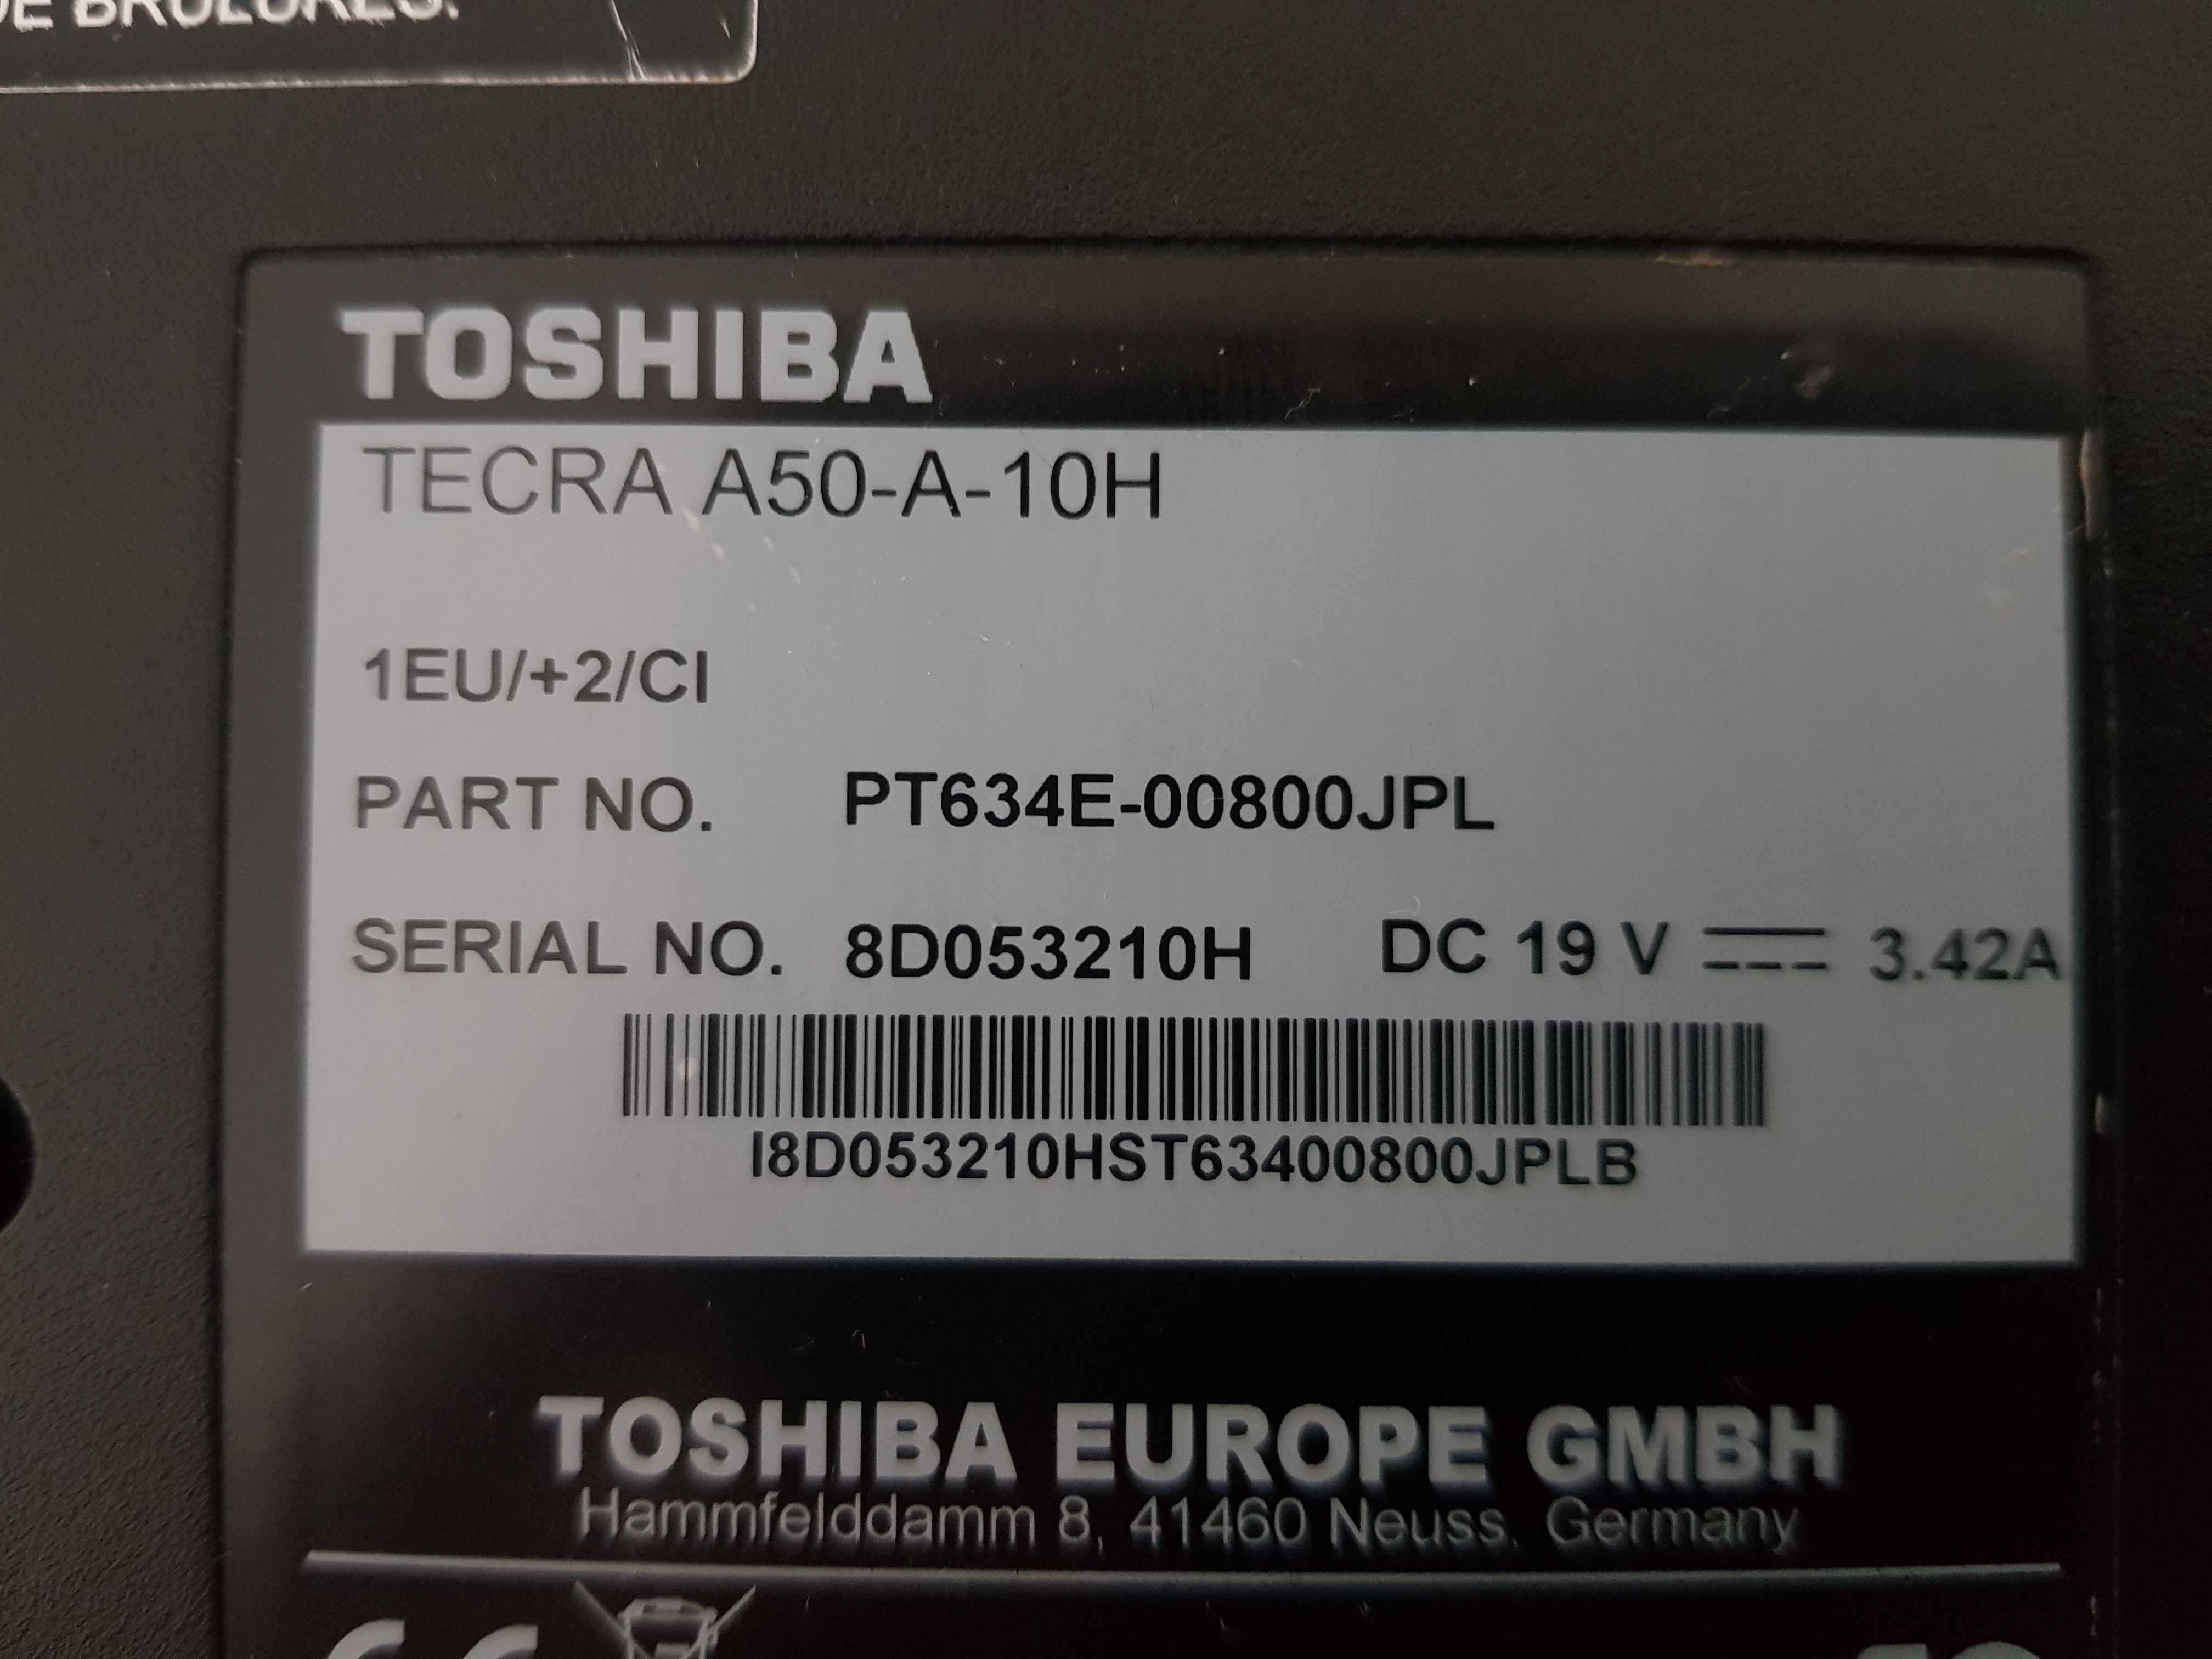 Toshiba TECRA A50-A-10H. Bez dysku